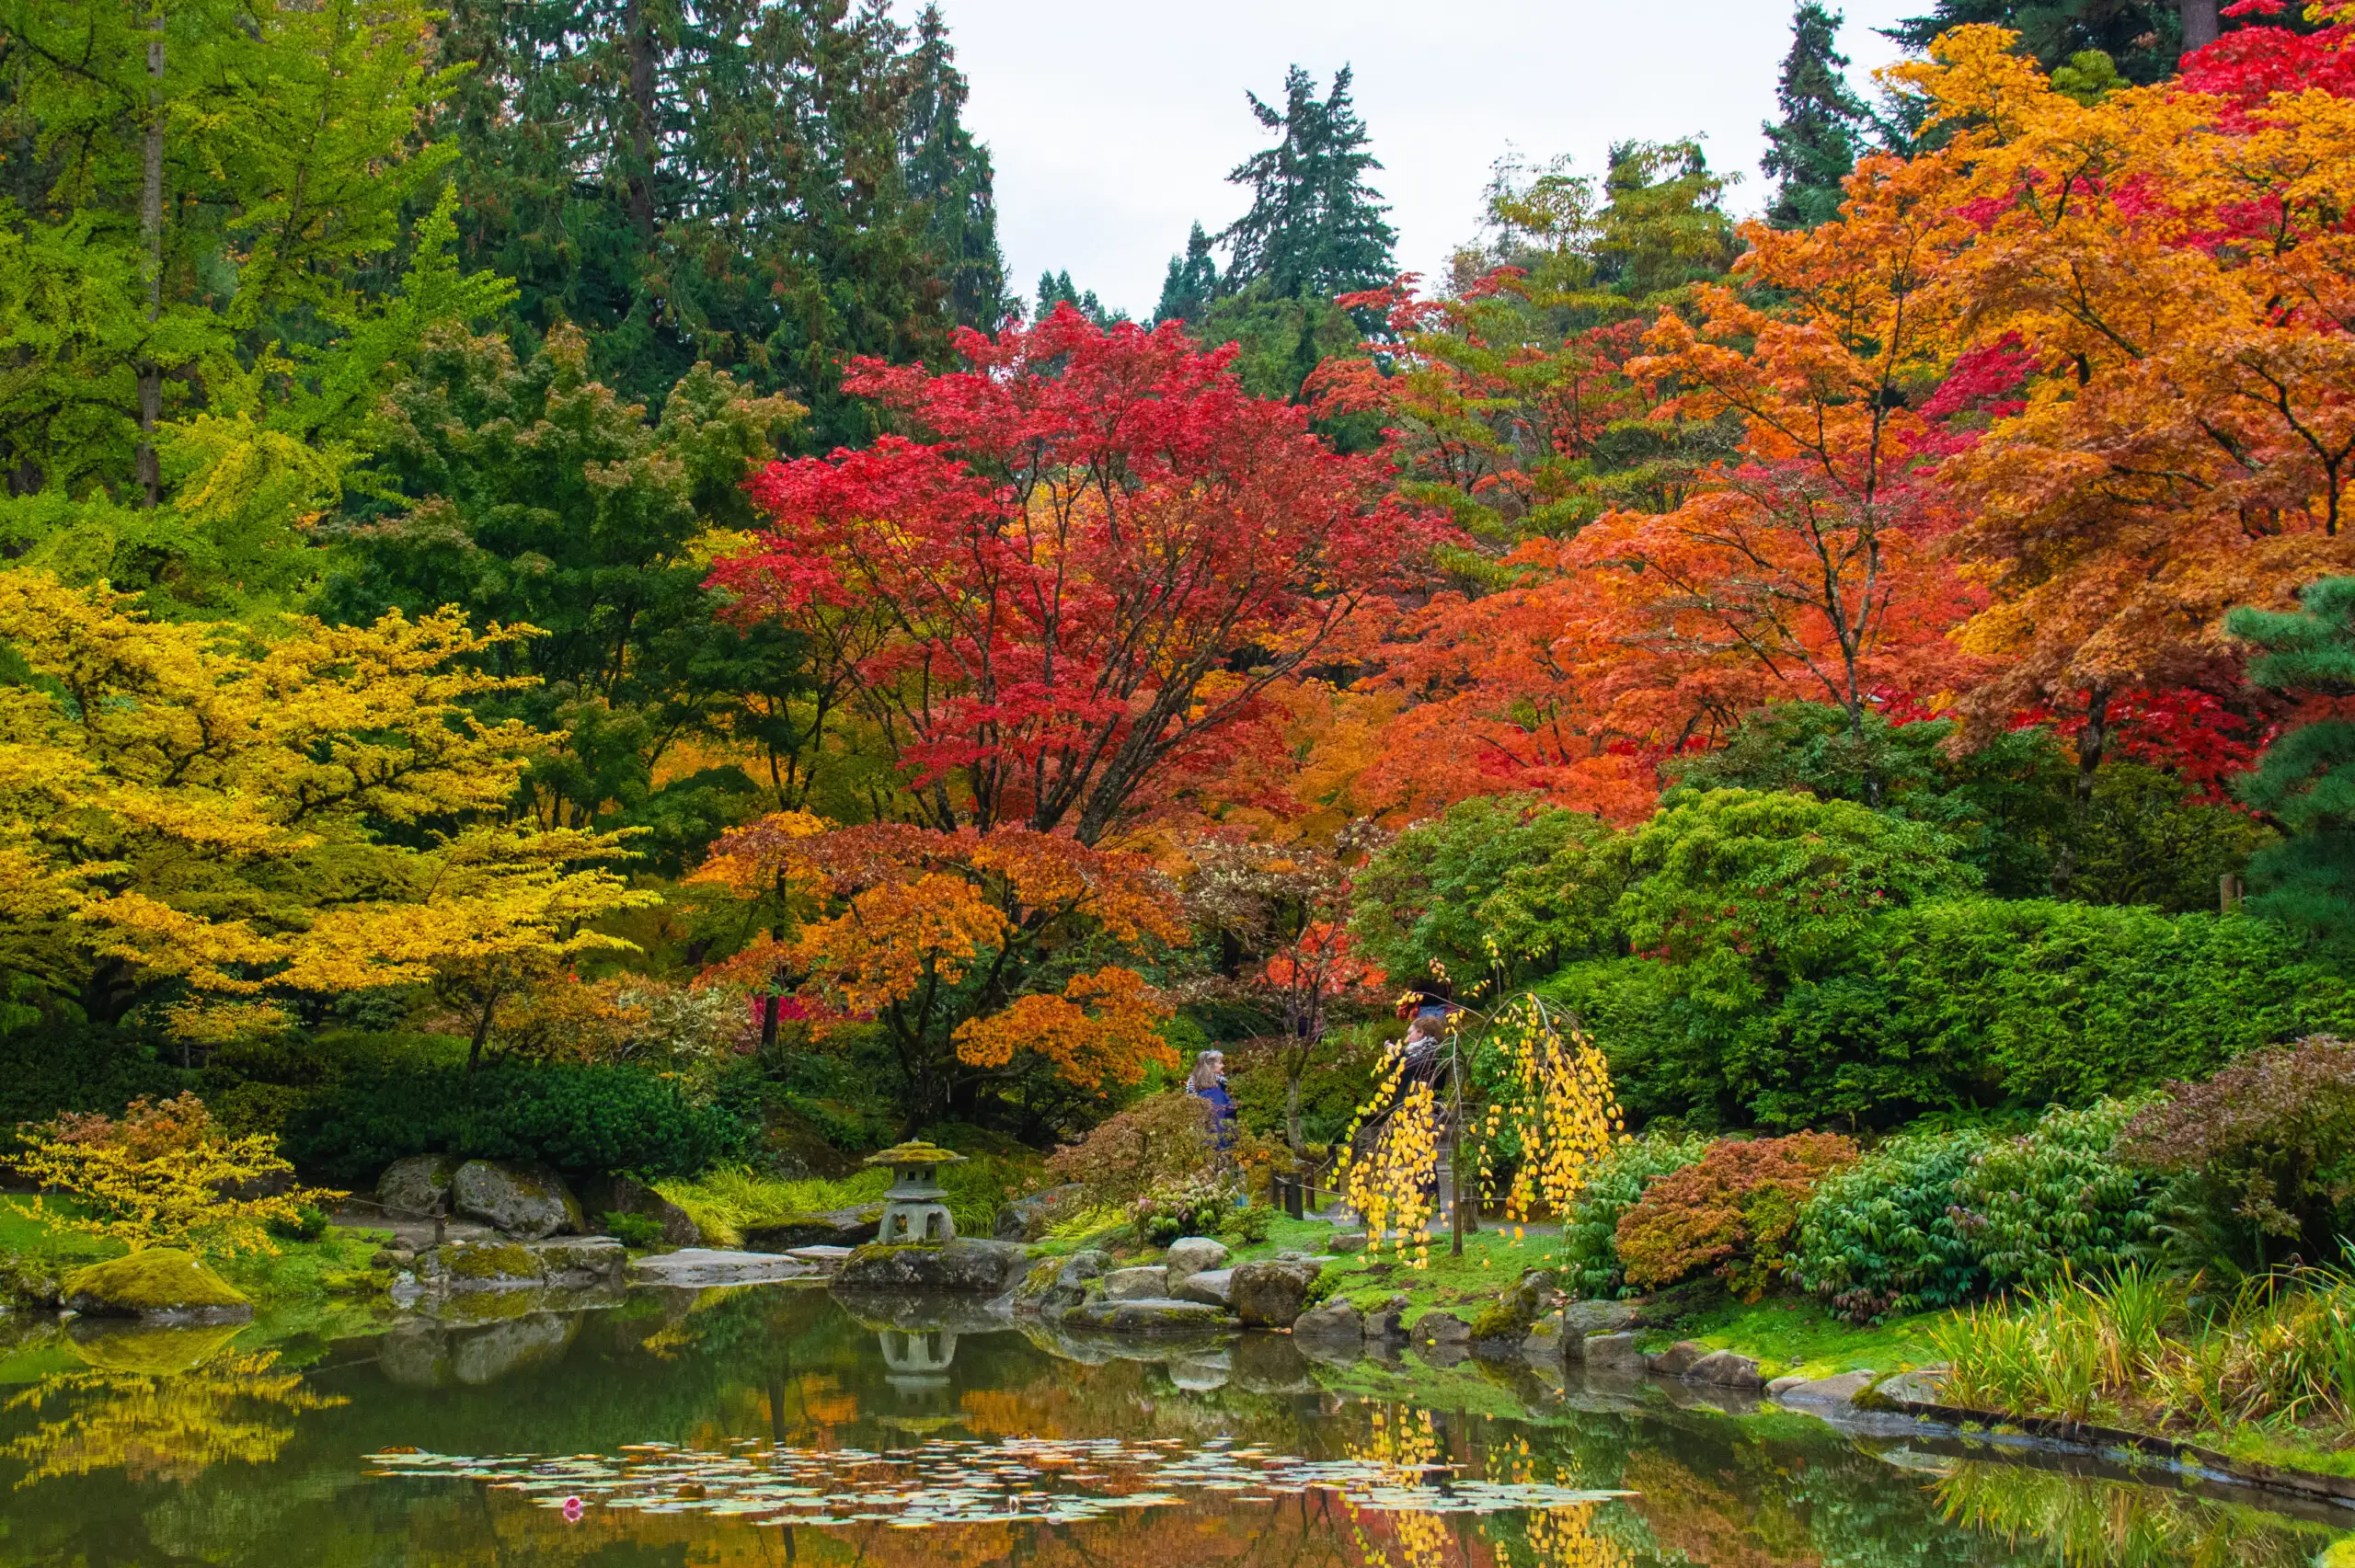 Japanese Garden at Washington Park Arboretum, Seattle, Washington